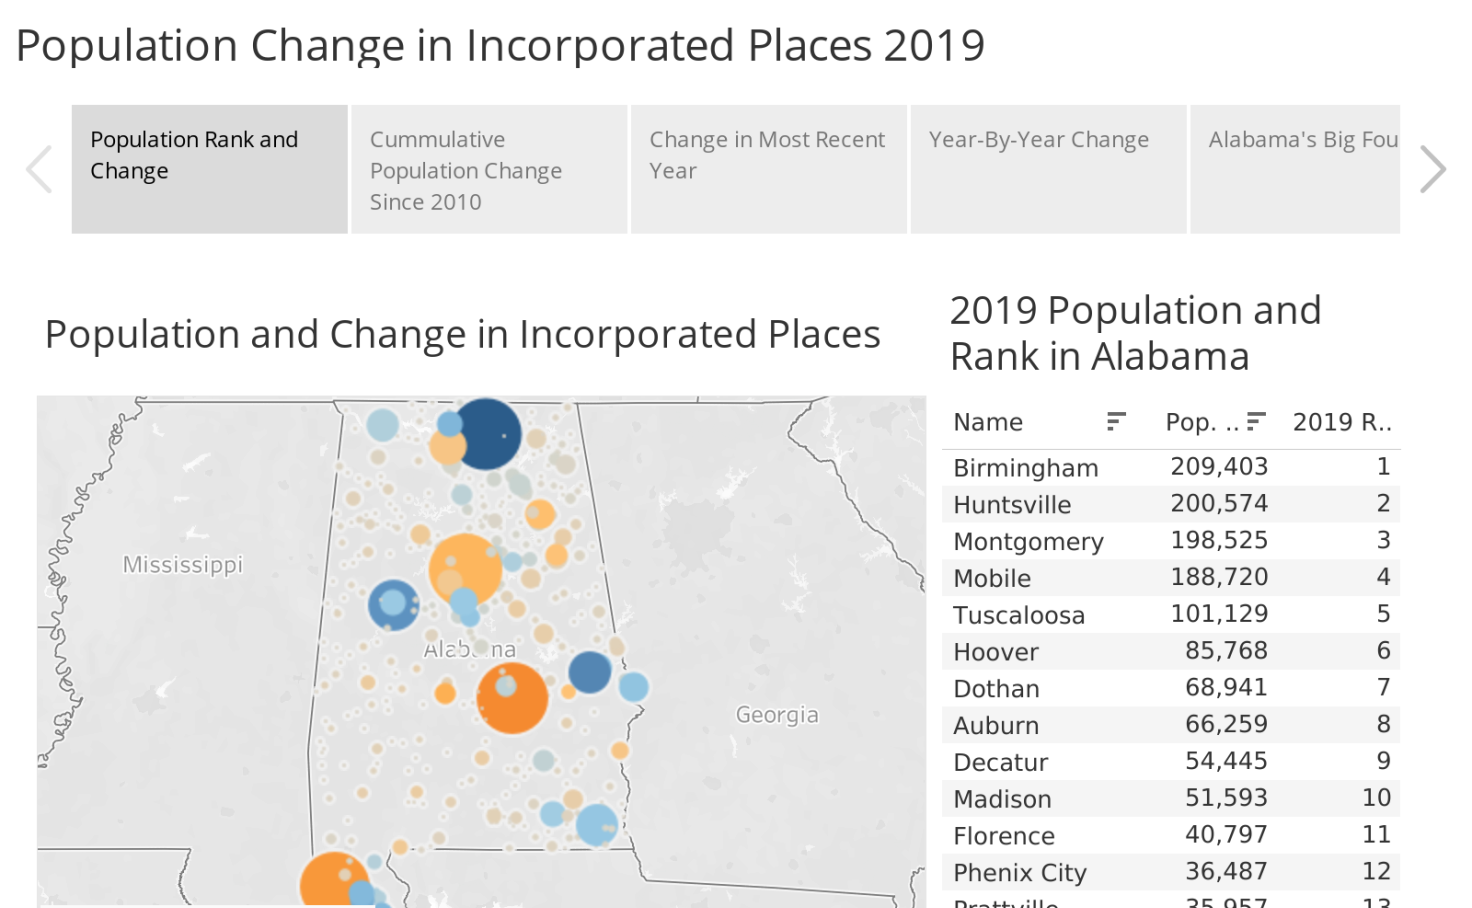 Alabama City Population Changes 2019 PARCA Tableau Public